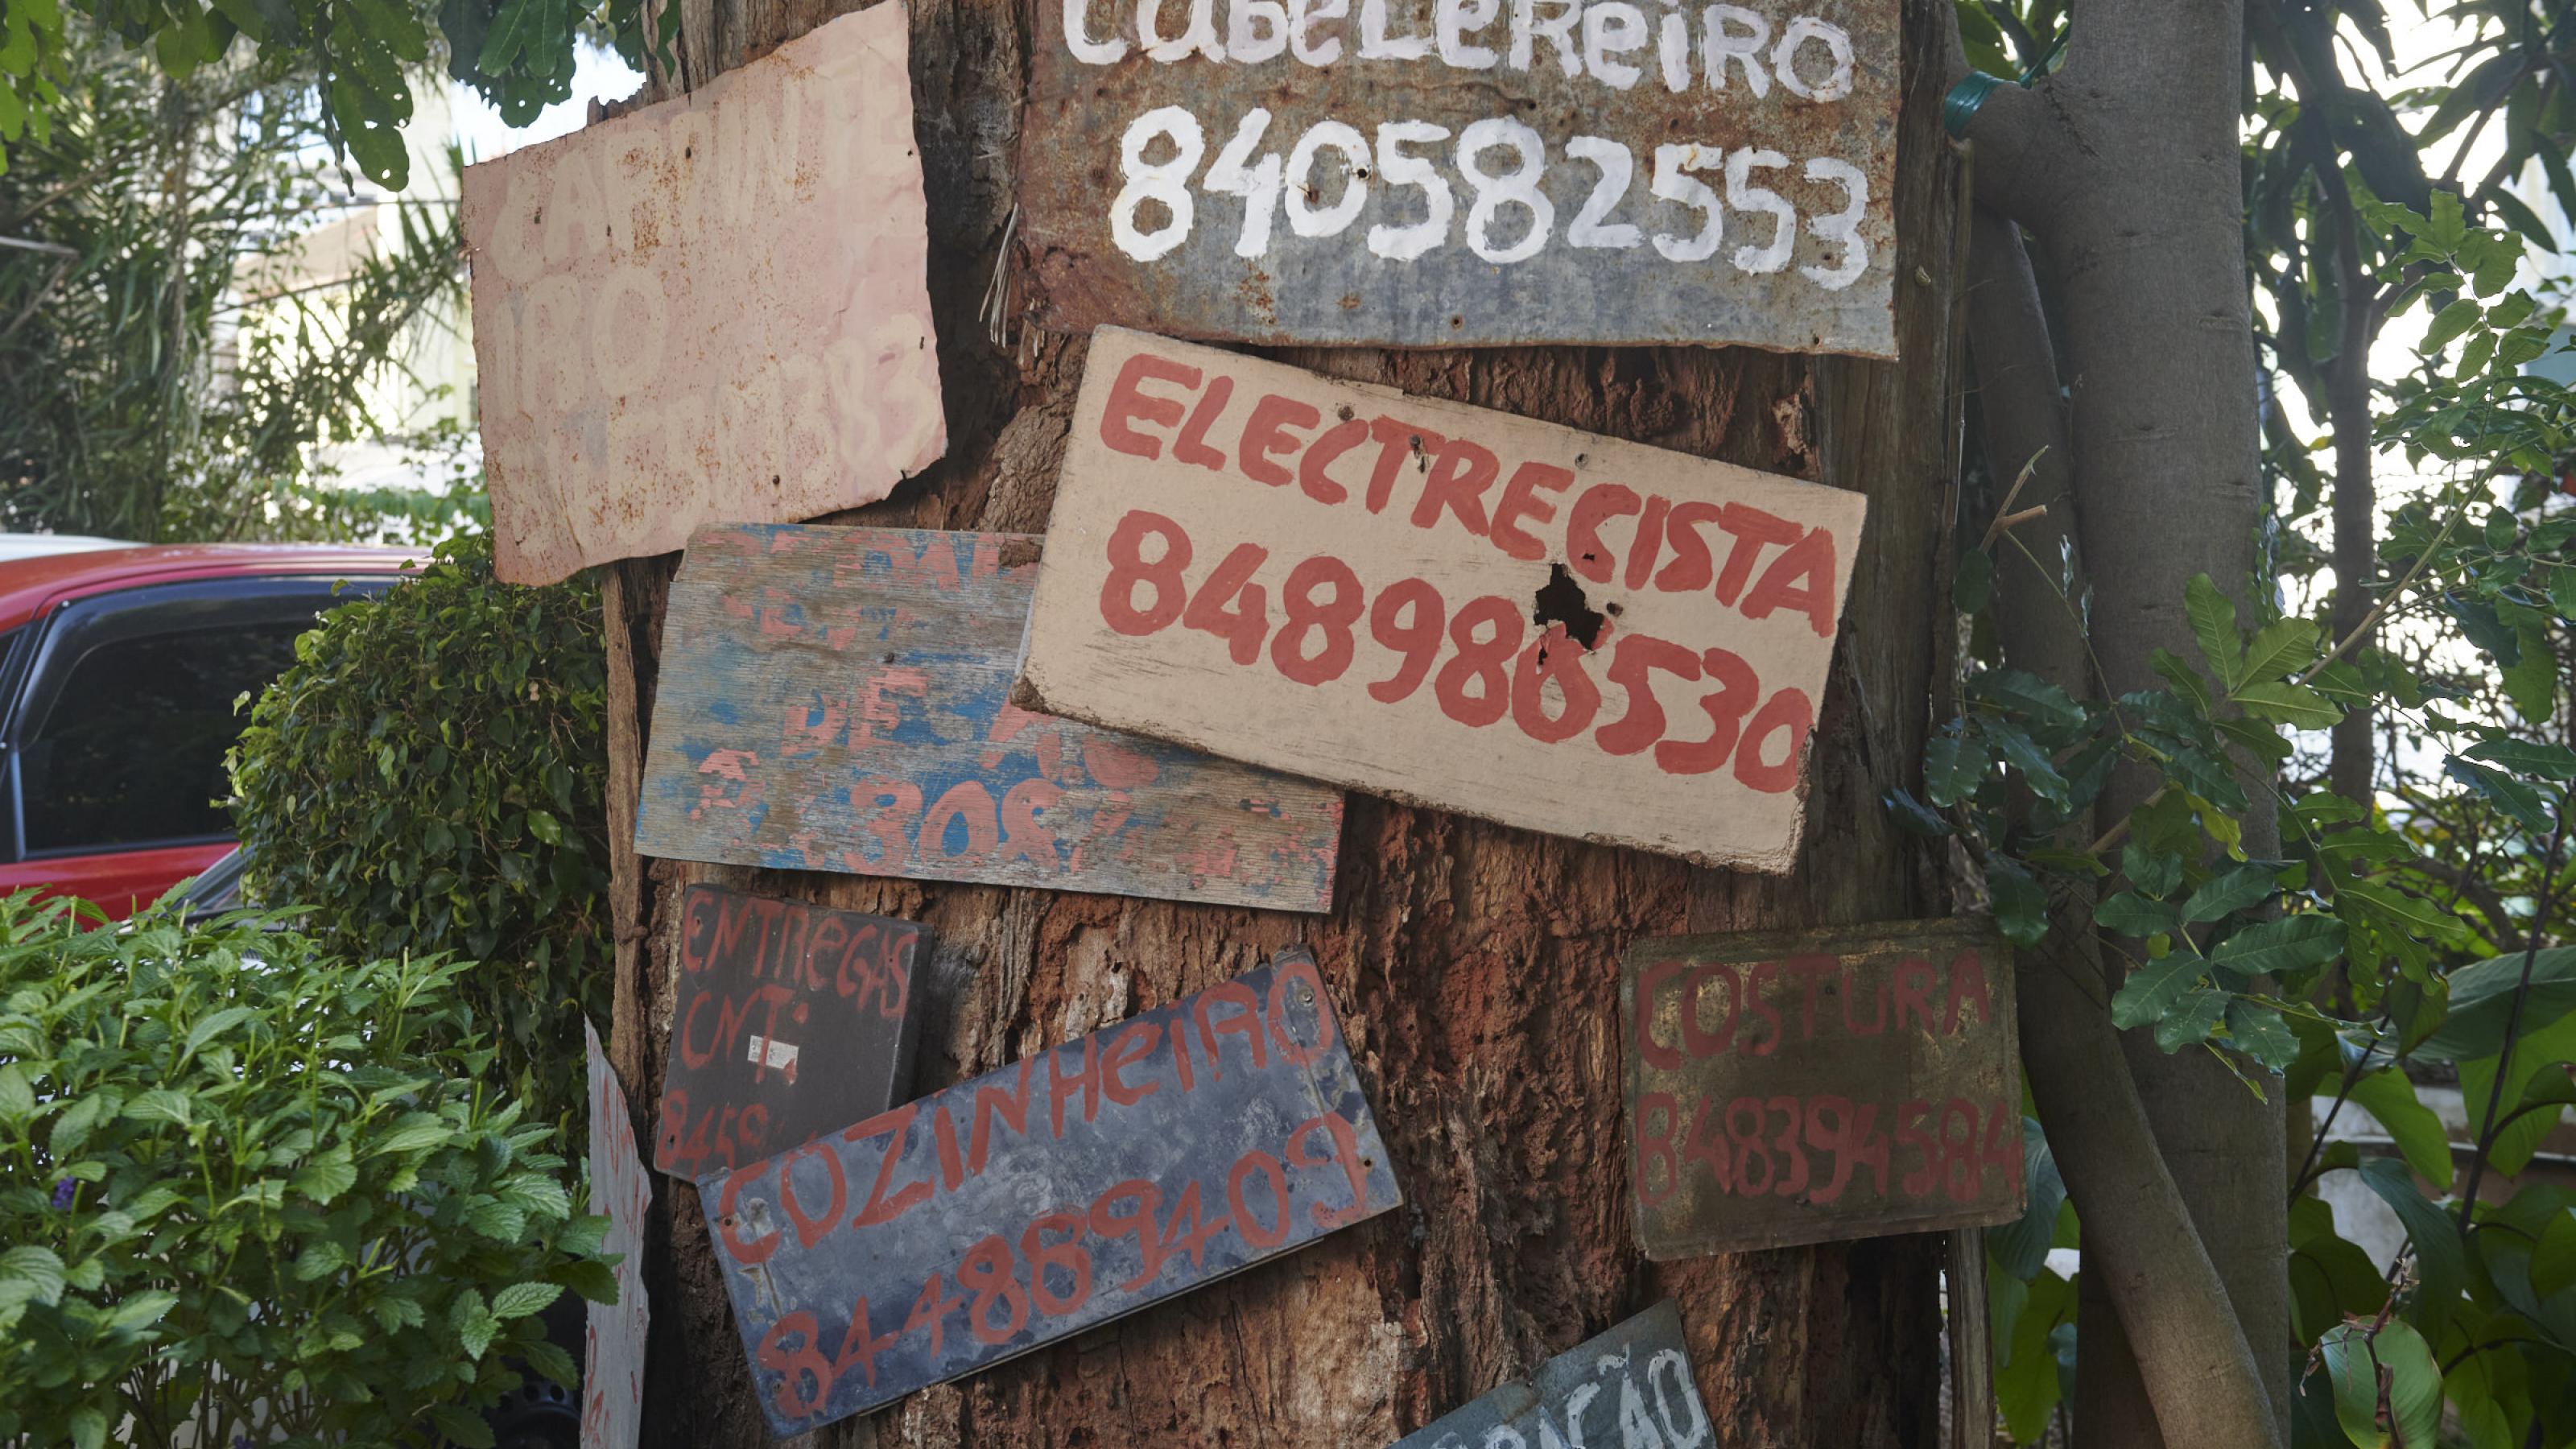 An einem Baumstamm sind mehrere handgemalte Schilder befestigt, darauf stehen die Berufe und Telefonnummern der Arbeiter